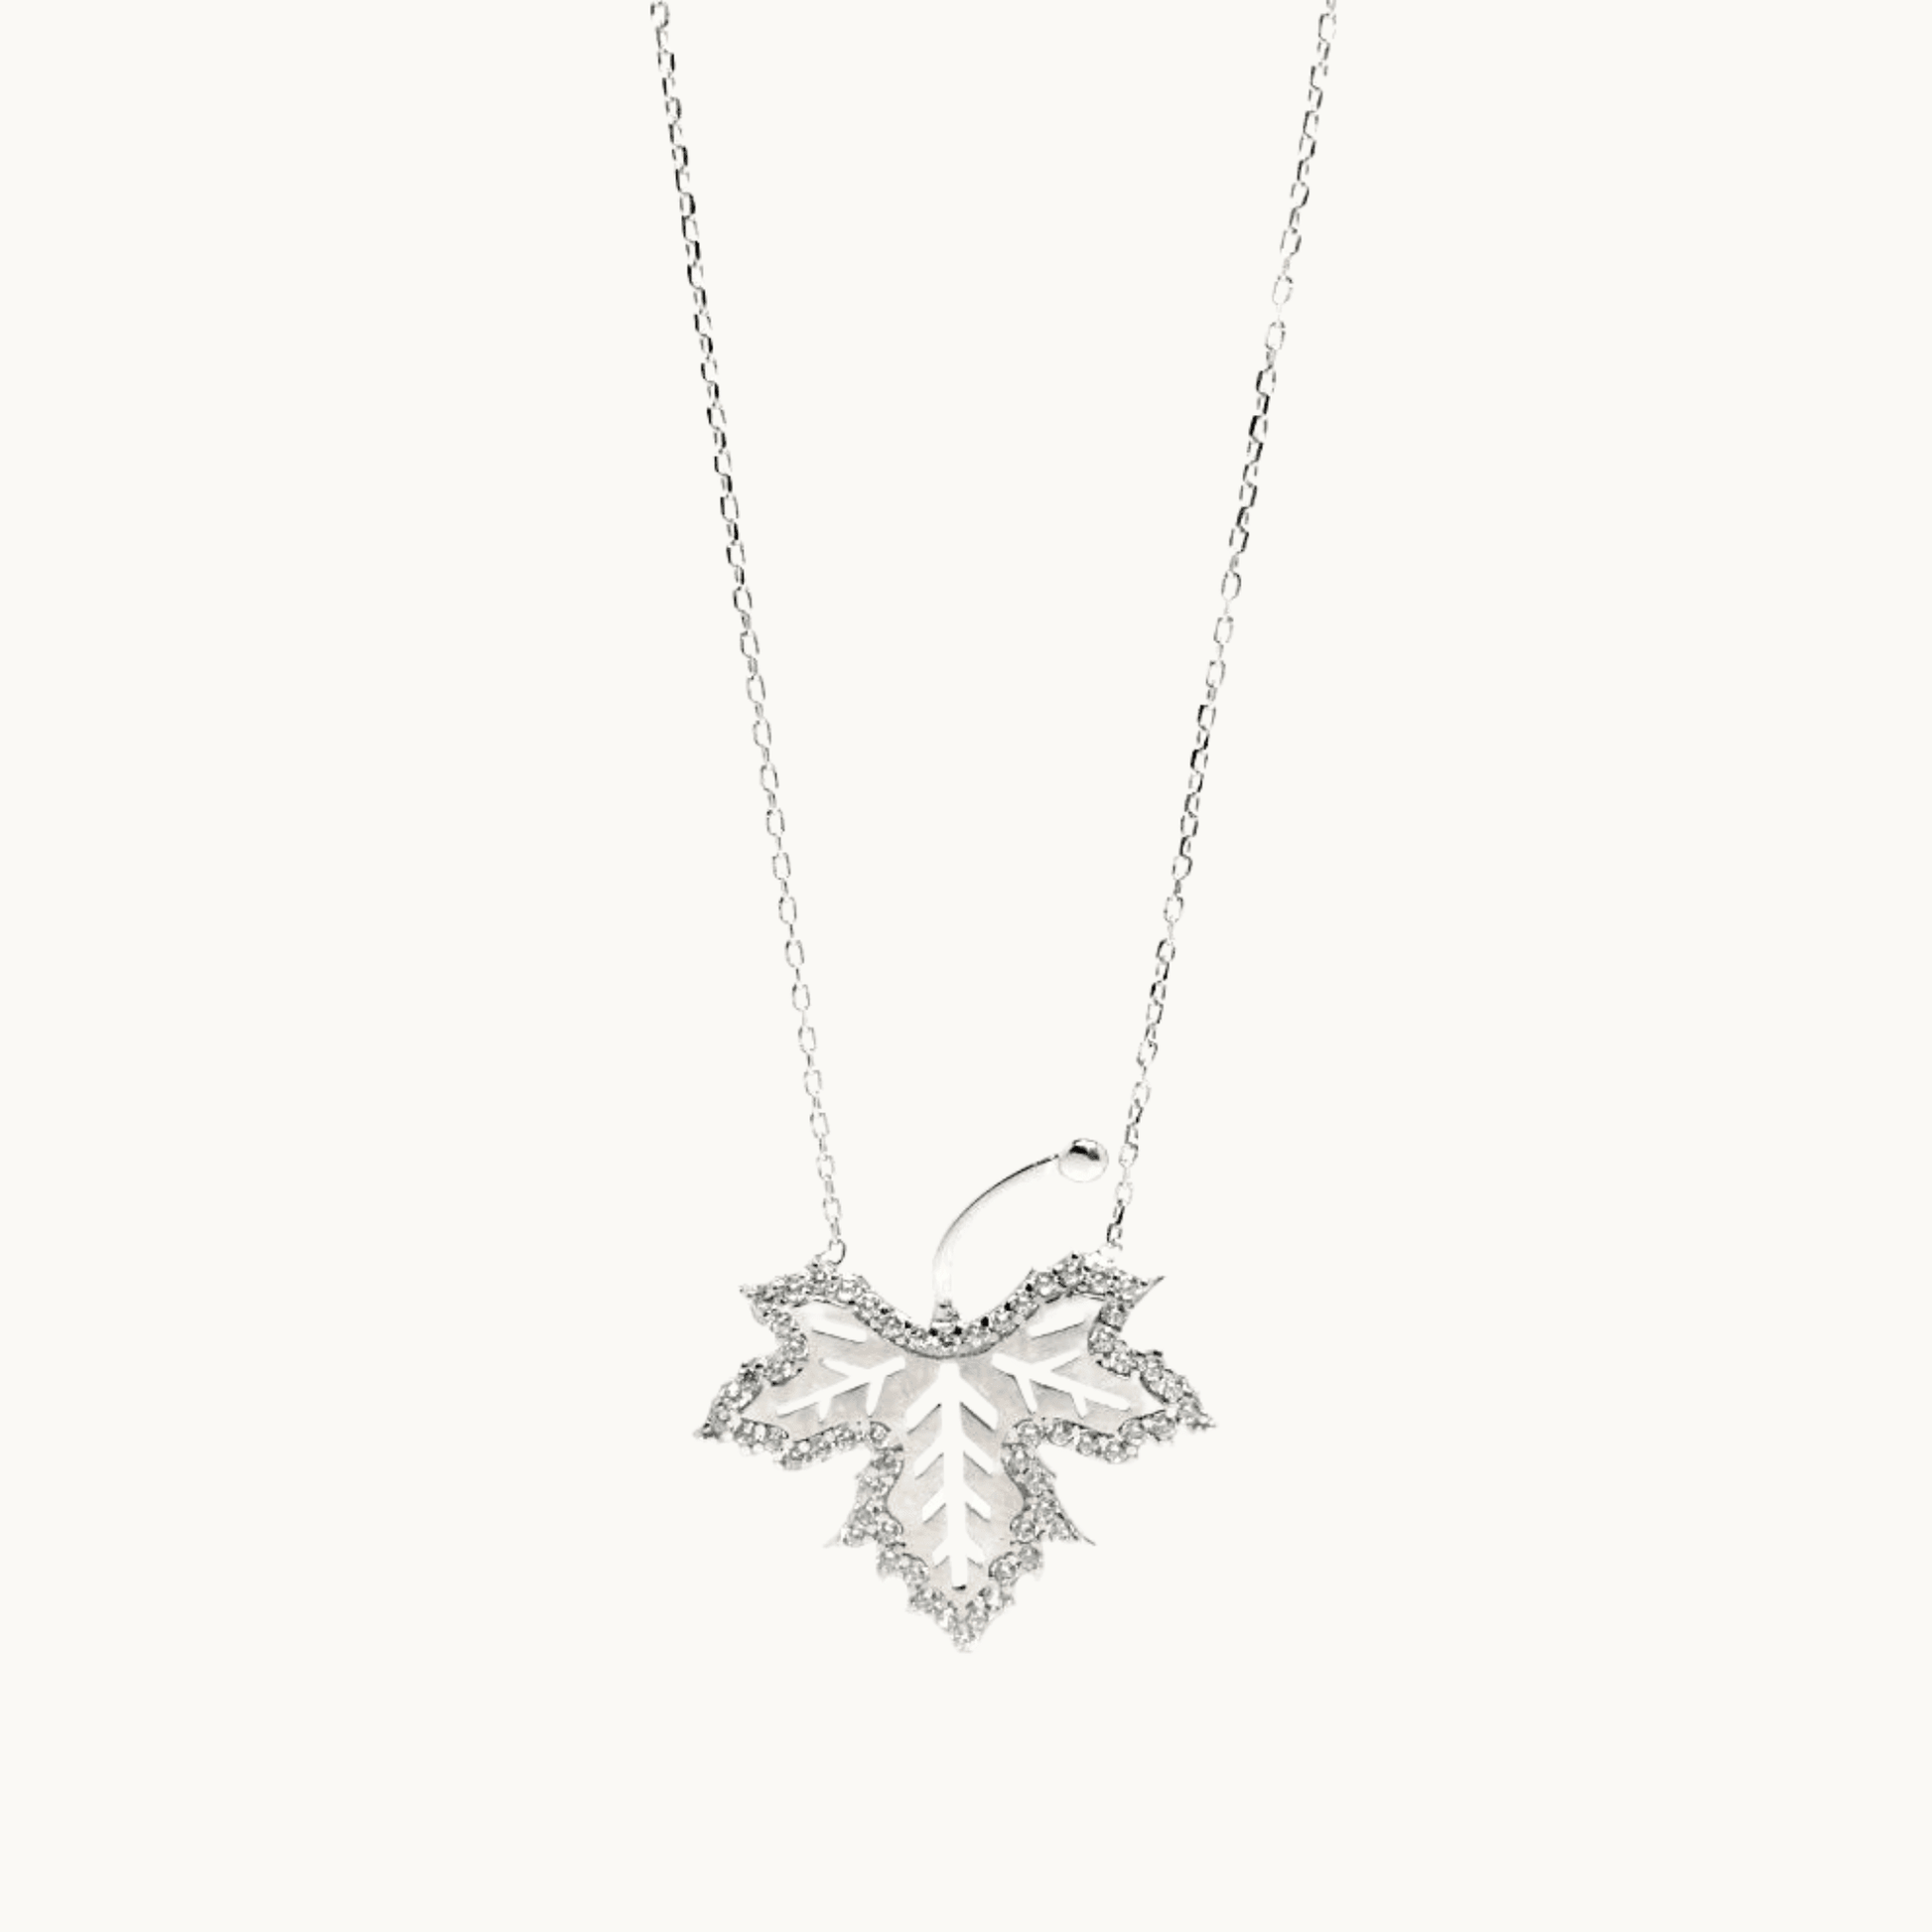 Winter Necklace, Crystal Leaf Necklace, 925 Sterling Silver - Naked Nation UK